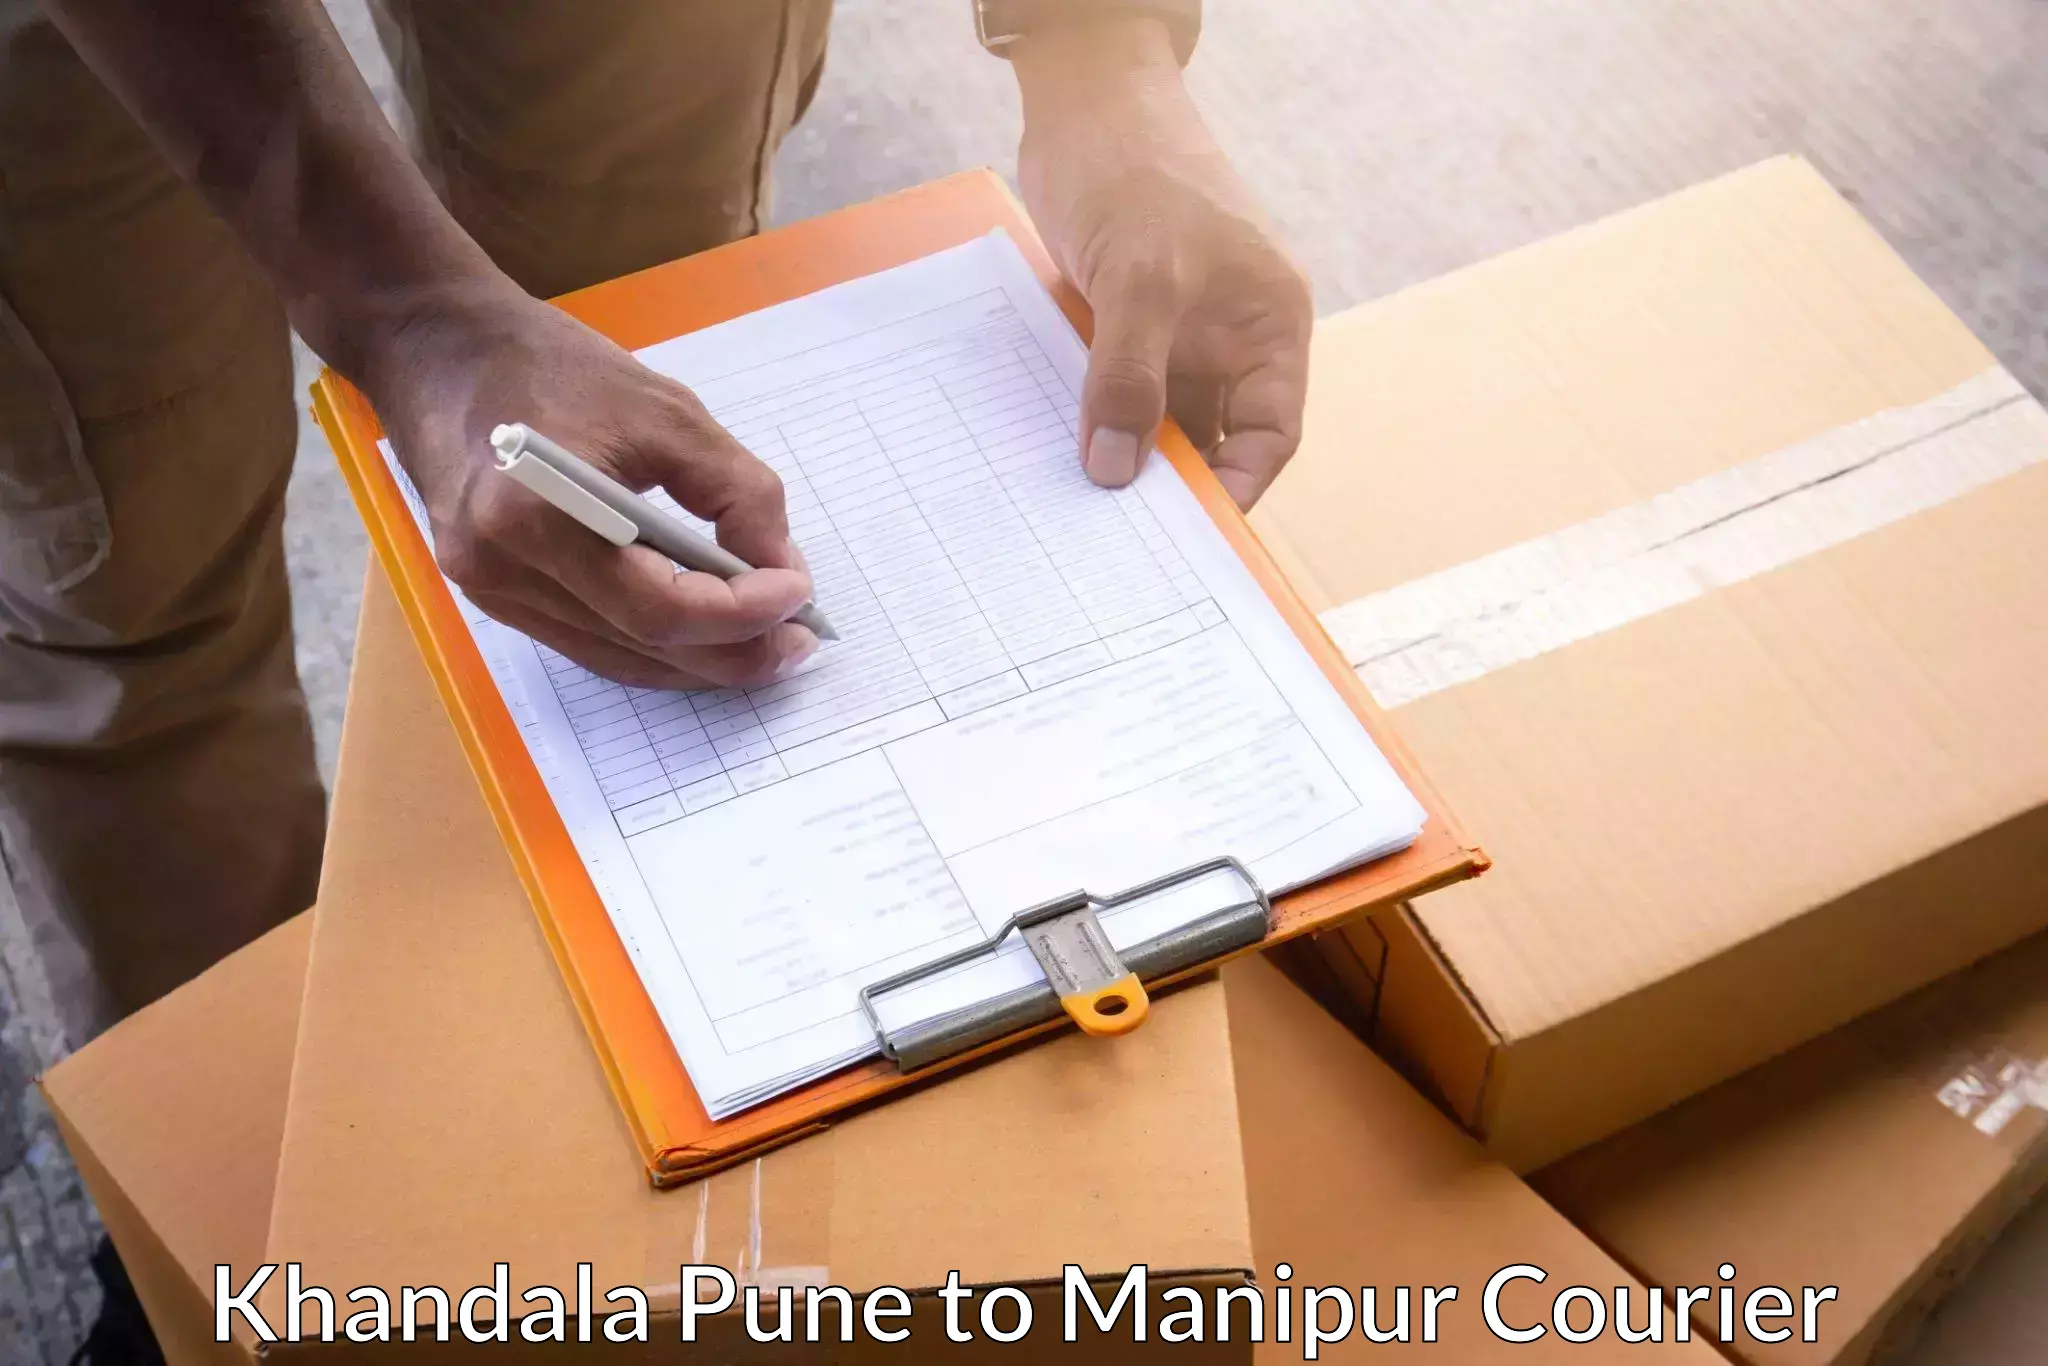 Professional parcel services Khandala Pune to Kangpokpi